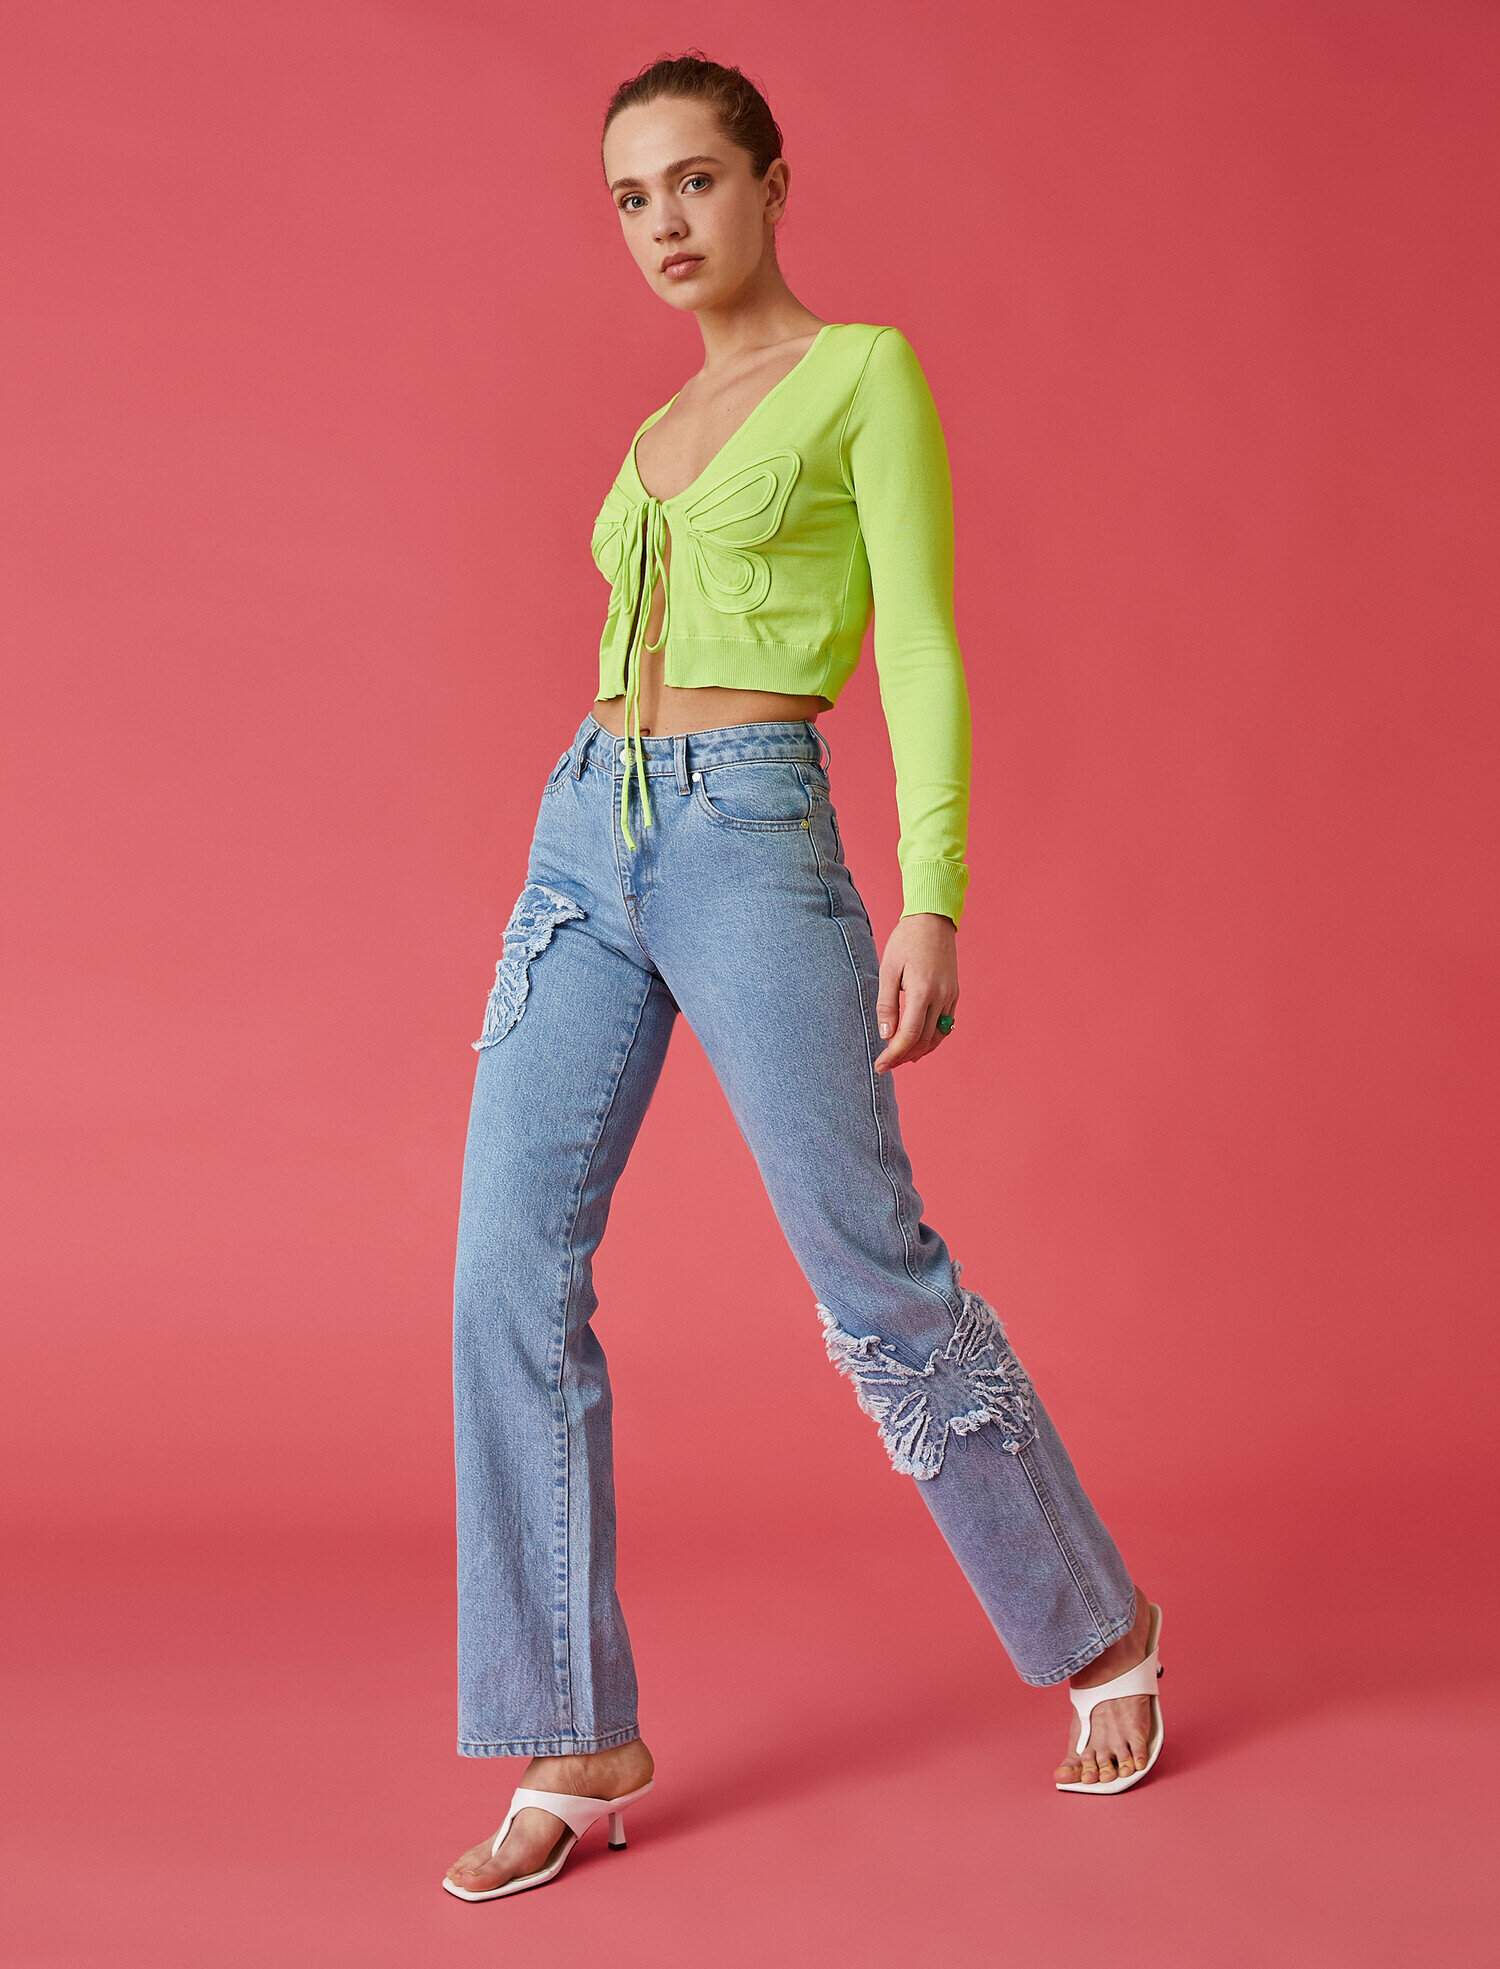 Джинсы Koton Flare Fit. Koton Victoria Flare Fit. Комбинированные джинсы женские.